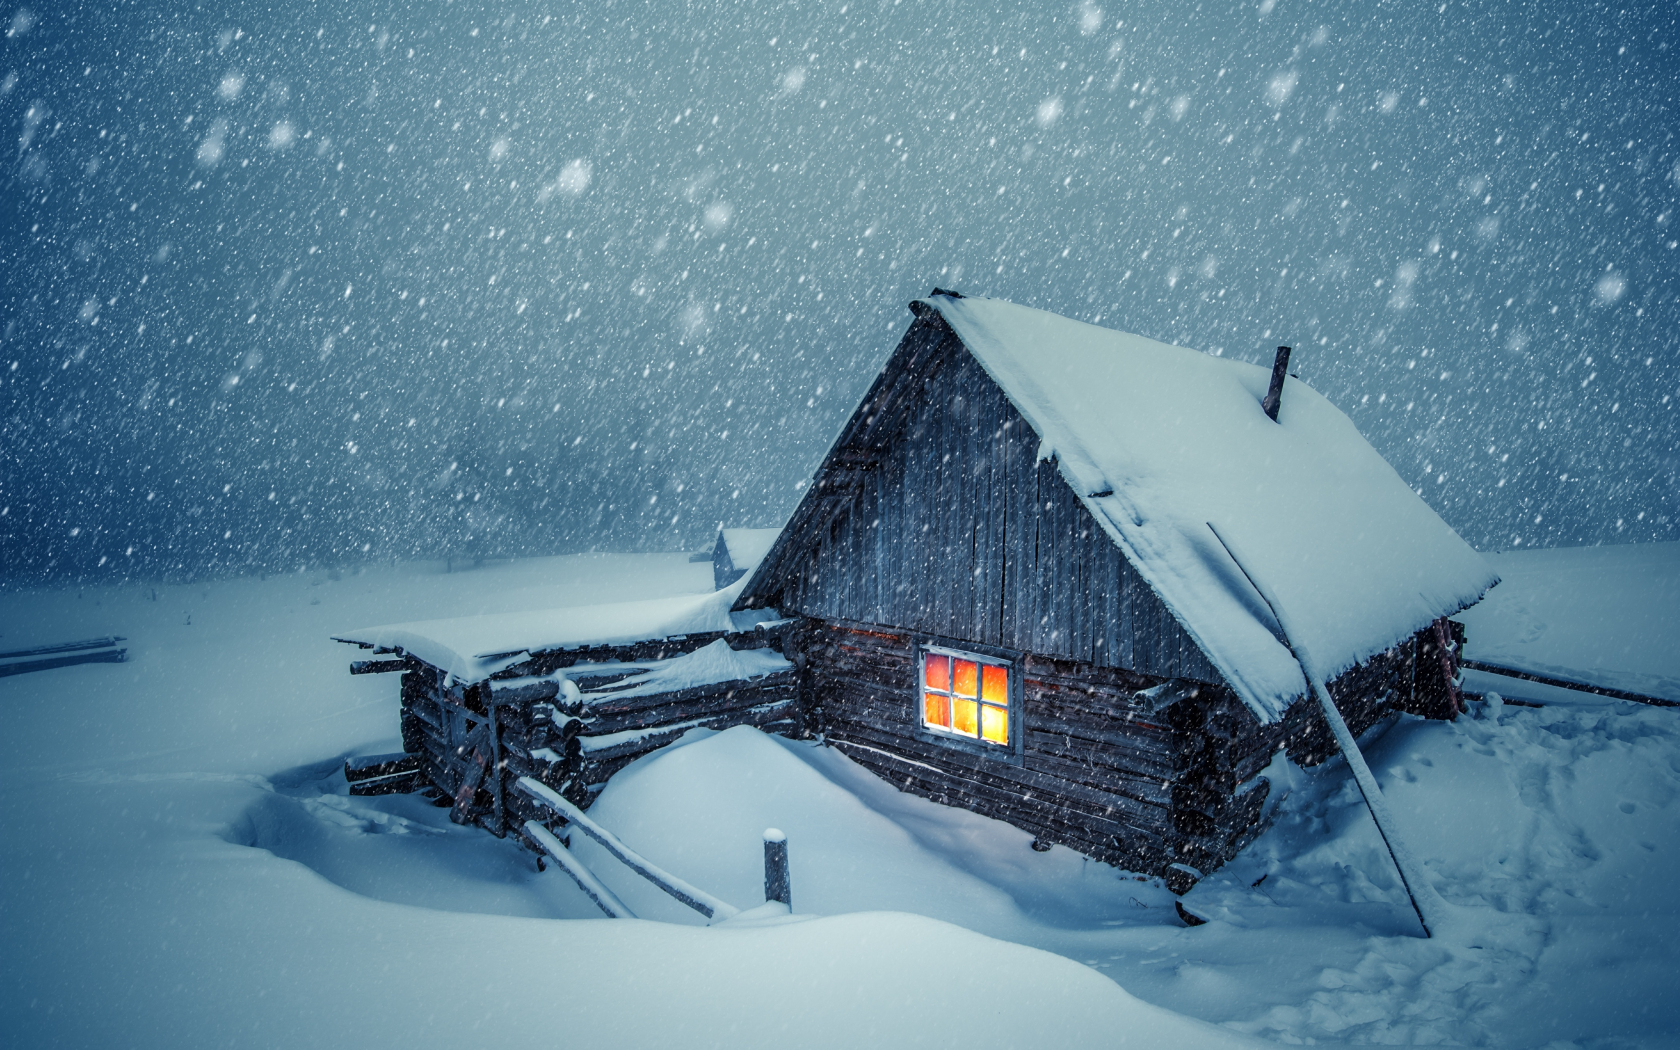 Download wallpaper 1680x1050 house light, winter, snowfall, 16:10 widescreen 1680x1050 HD background, 22984